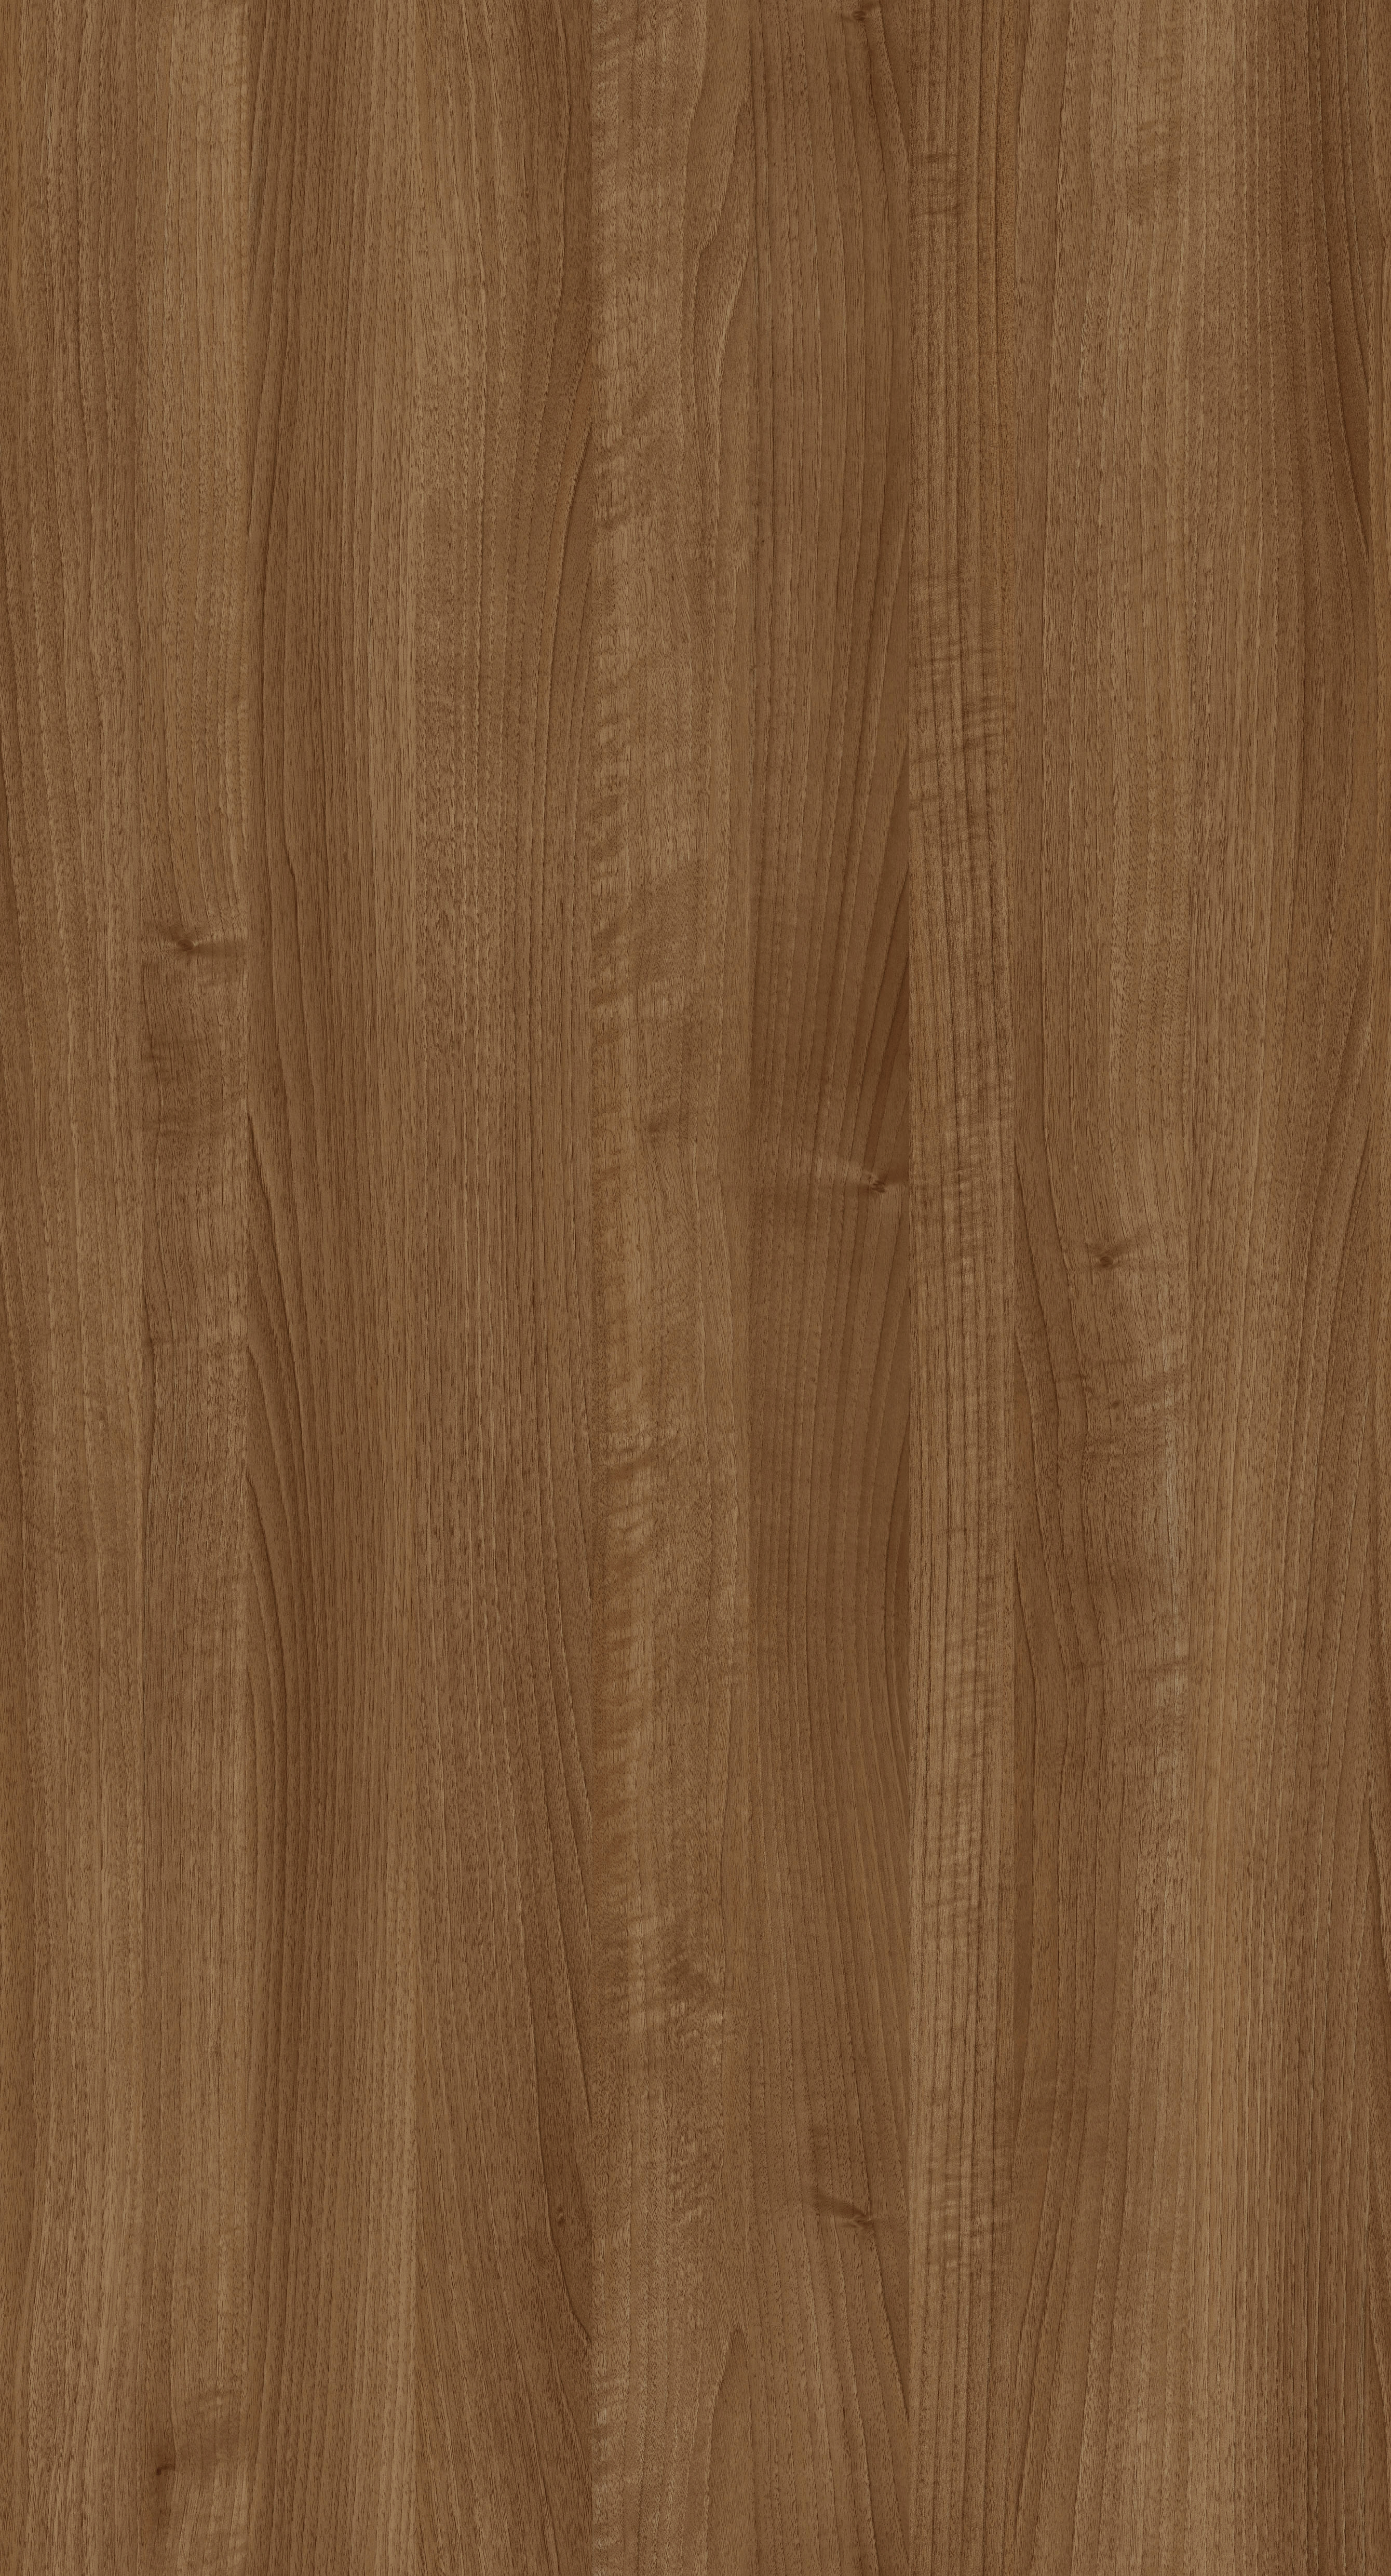 胡桃木原木色材质贴图下载 (1)枫木木纹贴图木板贴图 (5)木纹贴图木板